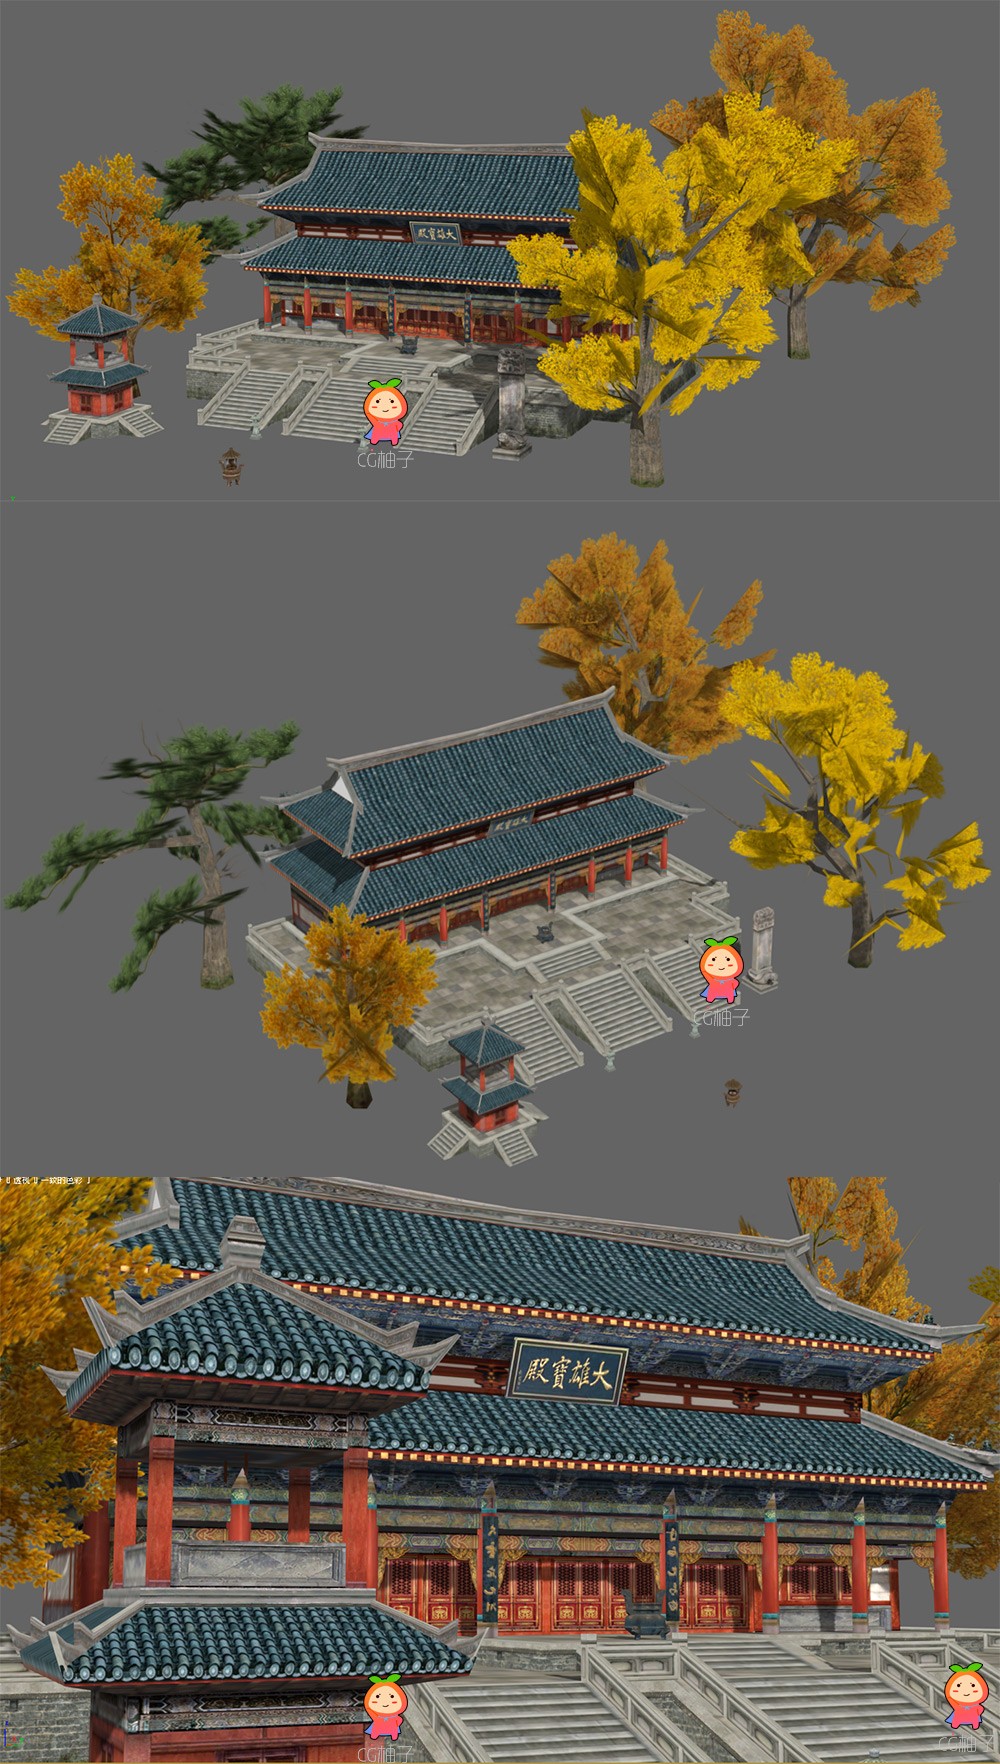 中国古代建筑模型 大雄保殿皇宫3D场景模型 古建筑房屋模型